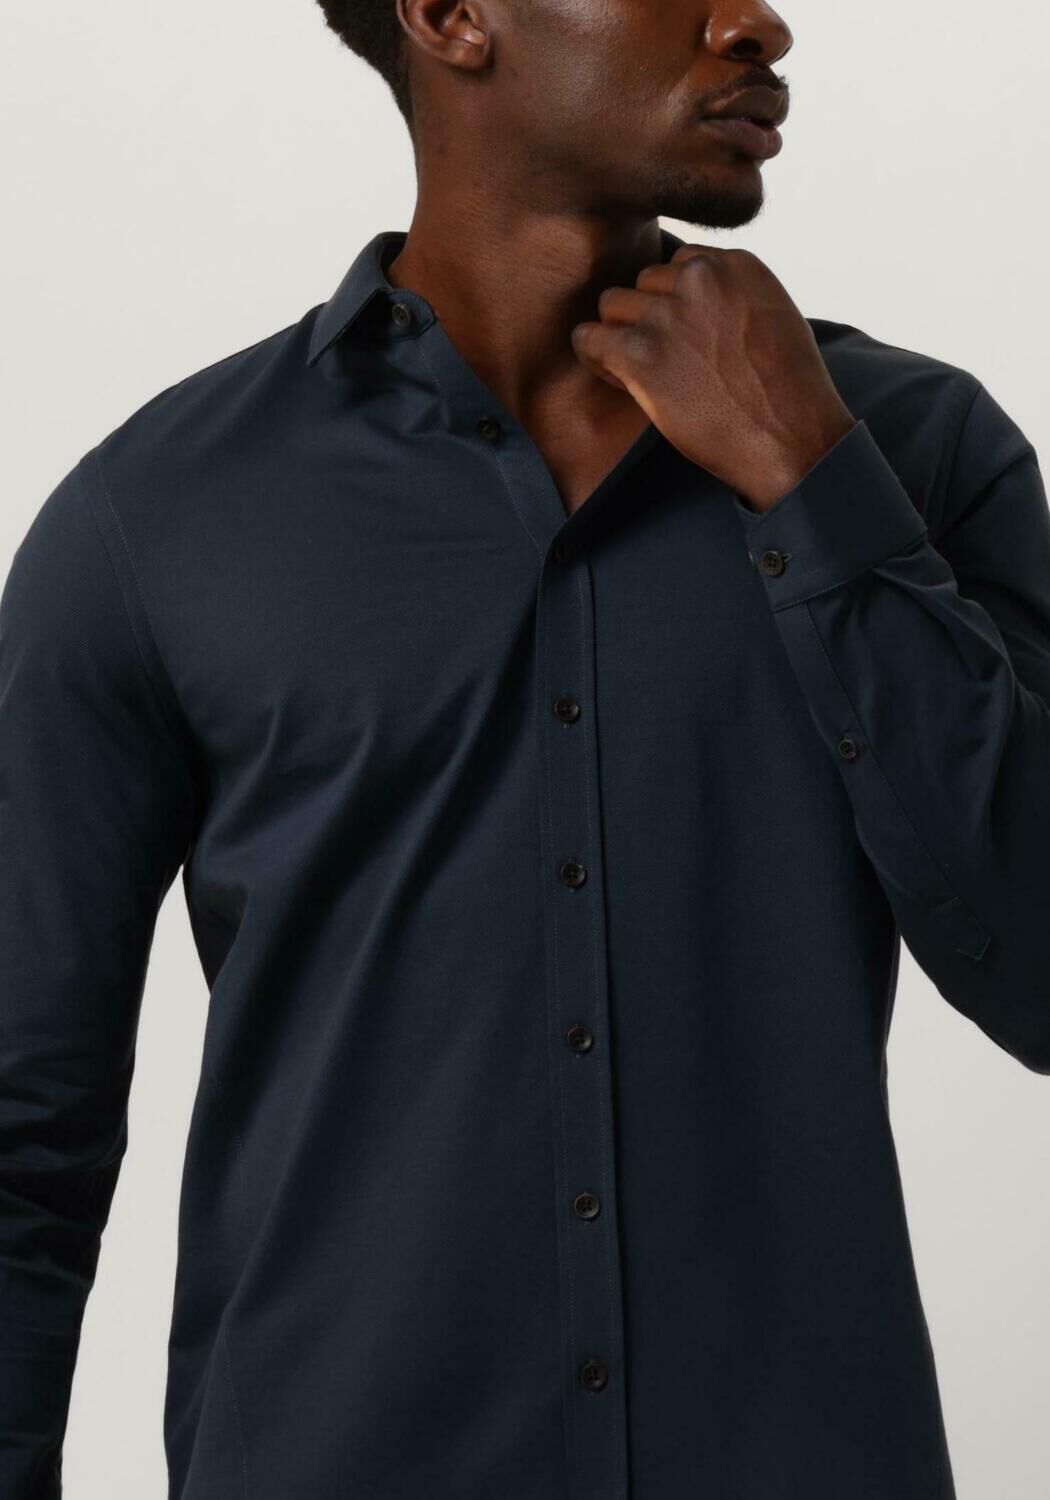 CAST IRON Heren Overhemden Long Sleeve Shirt Twill Jersey 2 Tone Blauw